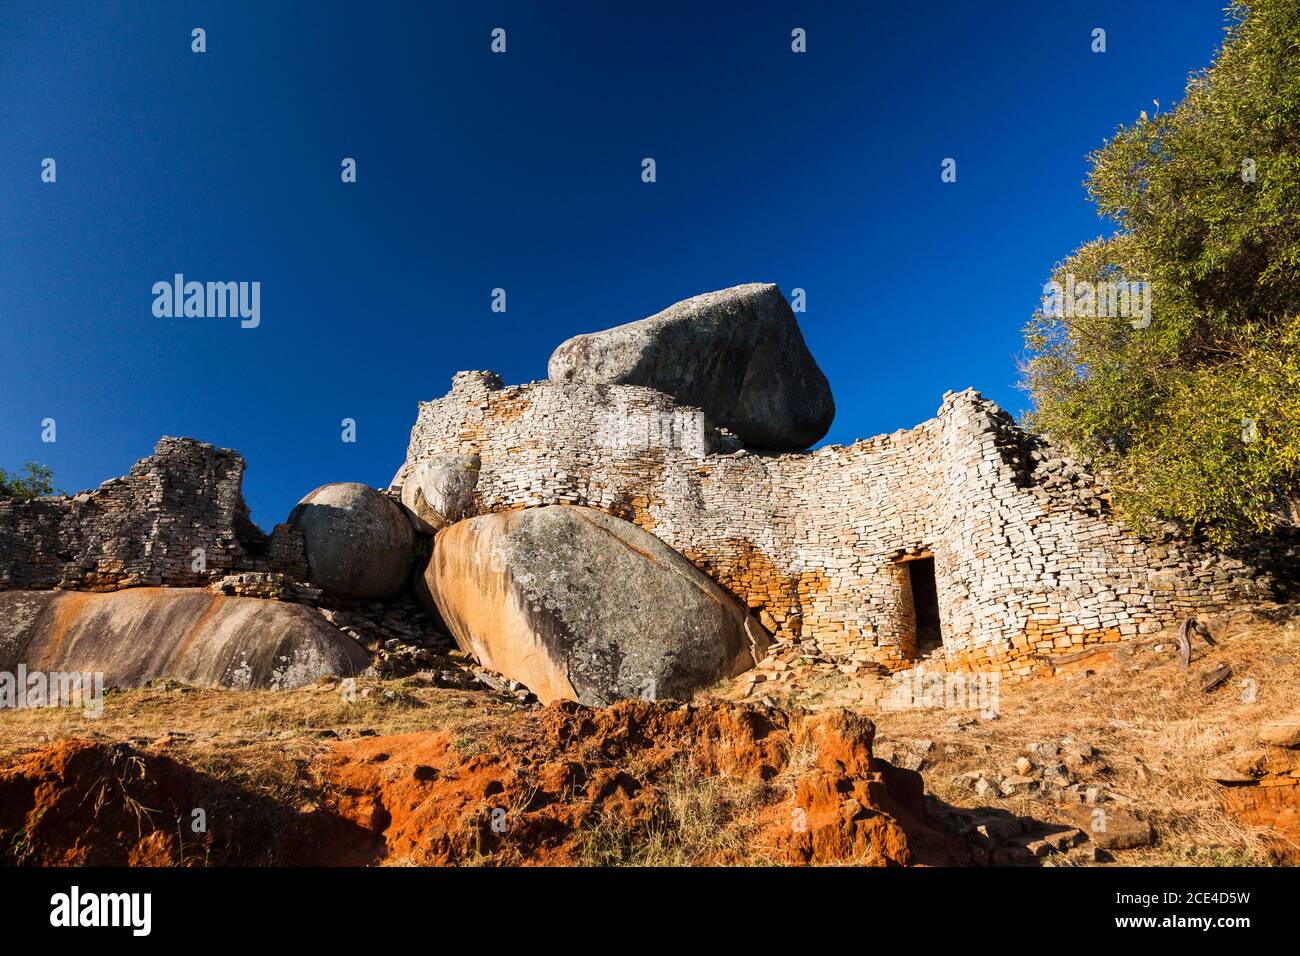 Grandes ruinas de Zimbabwe, patio del complejo de la colina, acrópolis, antigua capital de la civilización Bantu, provincia de Masvingo, Zimbabwe, África Foto de stock